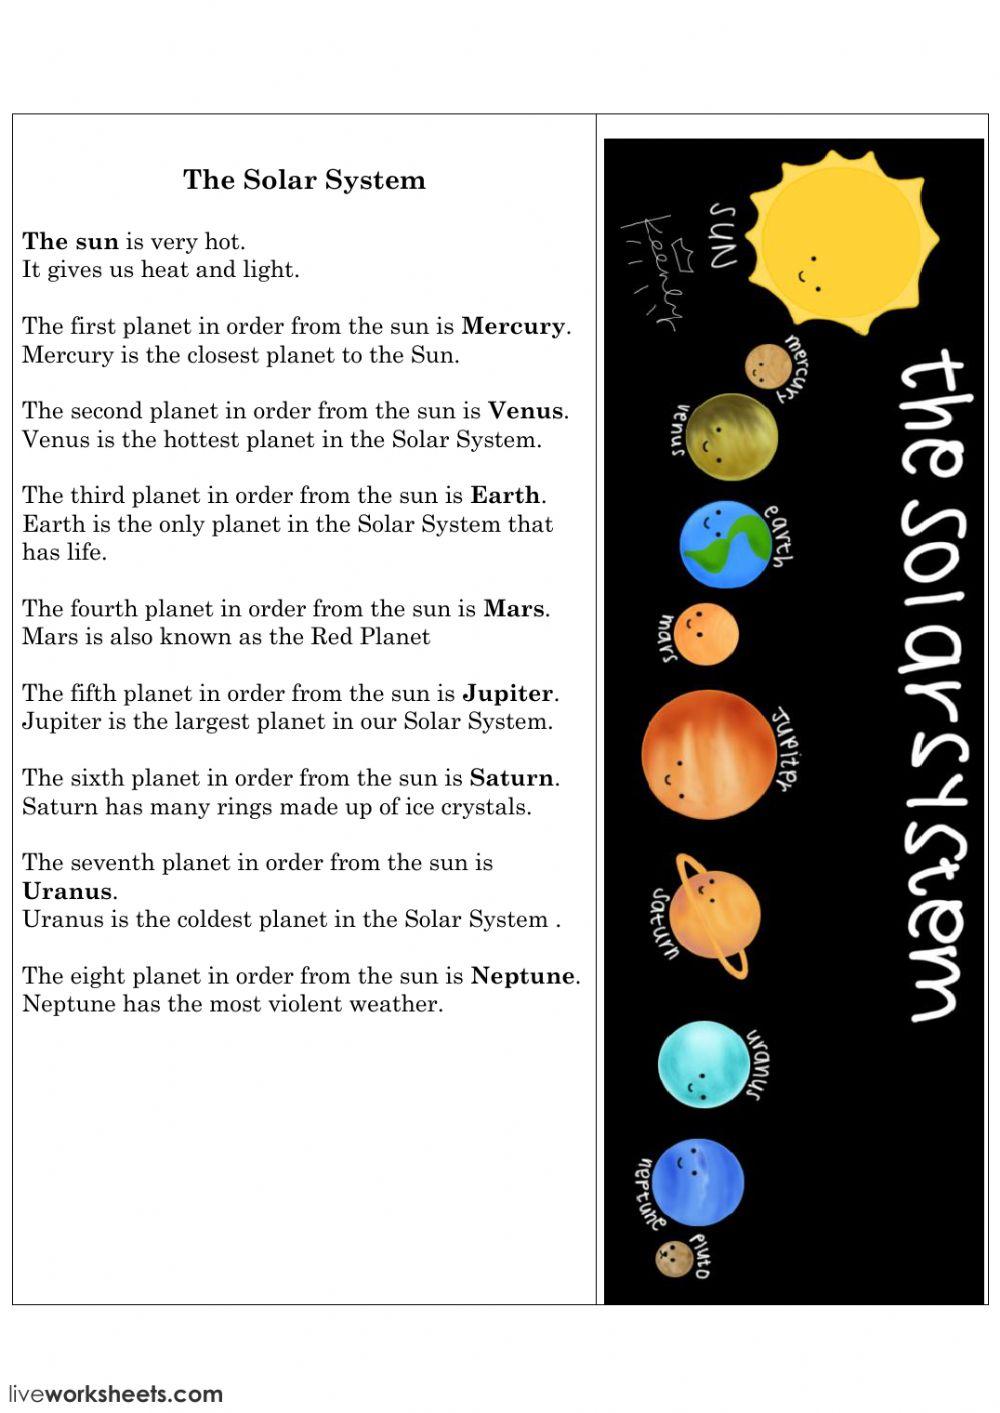 Solar System задания. The Solar System задания на английском. Солнечная система на английском языке. Планеты солнечной системы задания. Planets questions